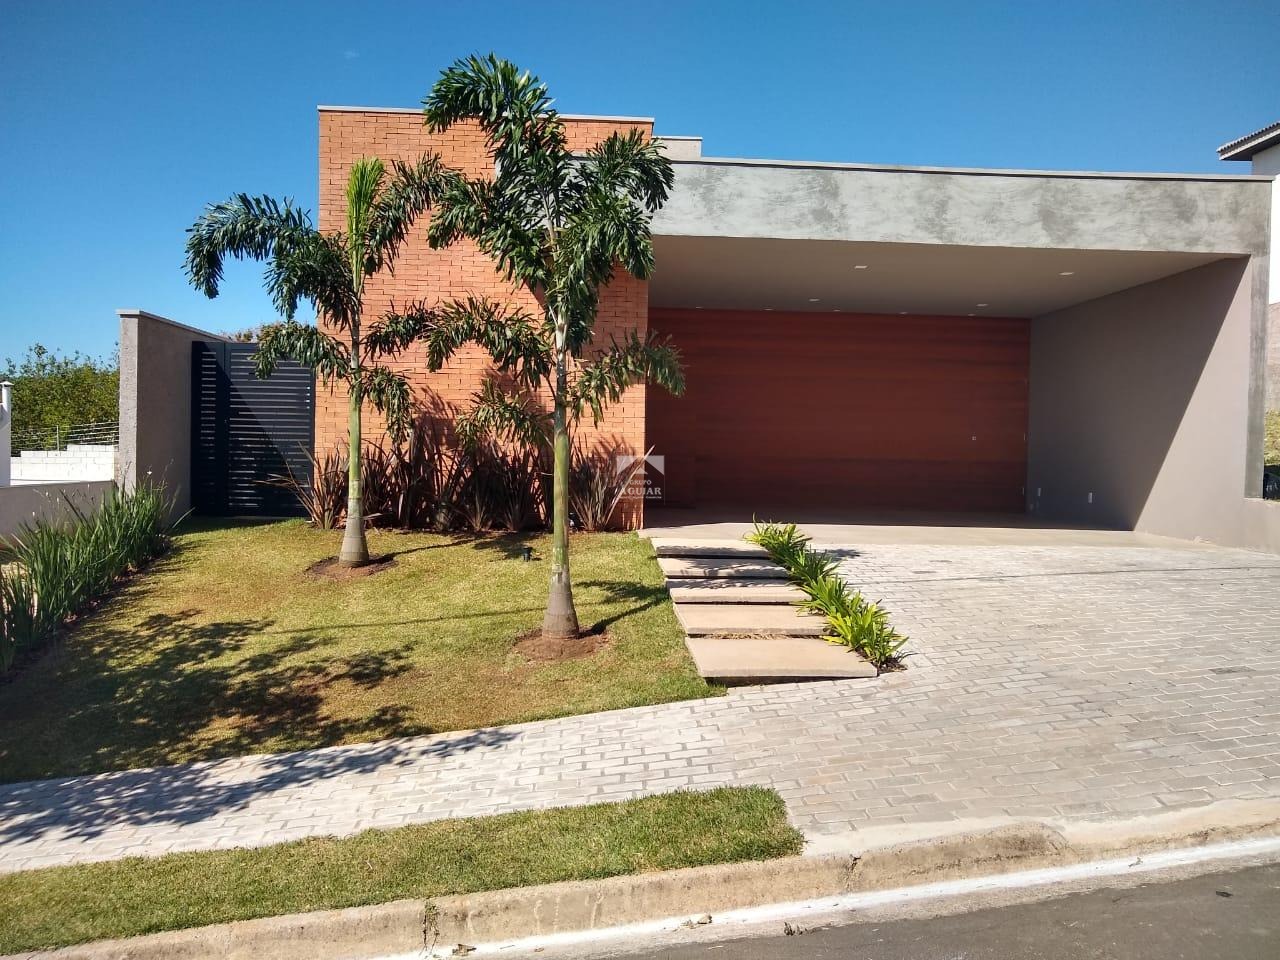 CA002223 | Casa venda Pinheiro | Valinhos/SP